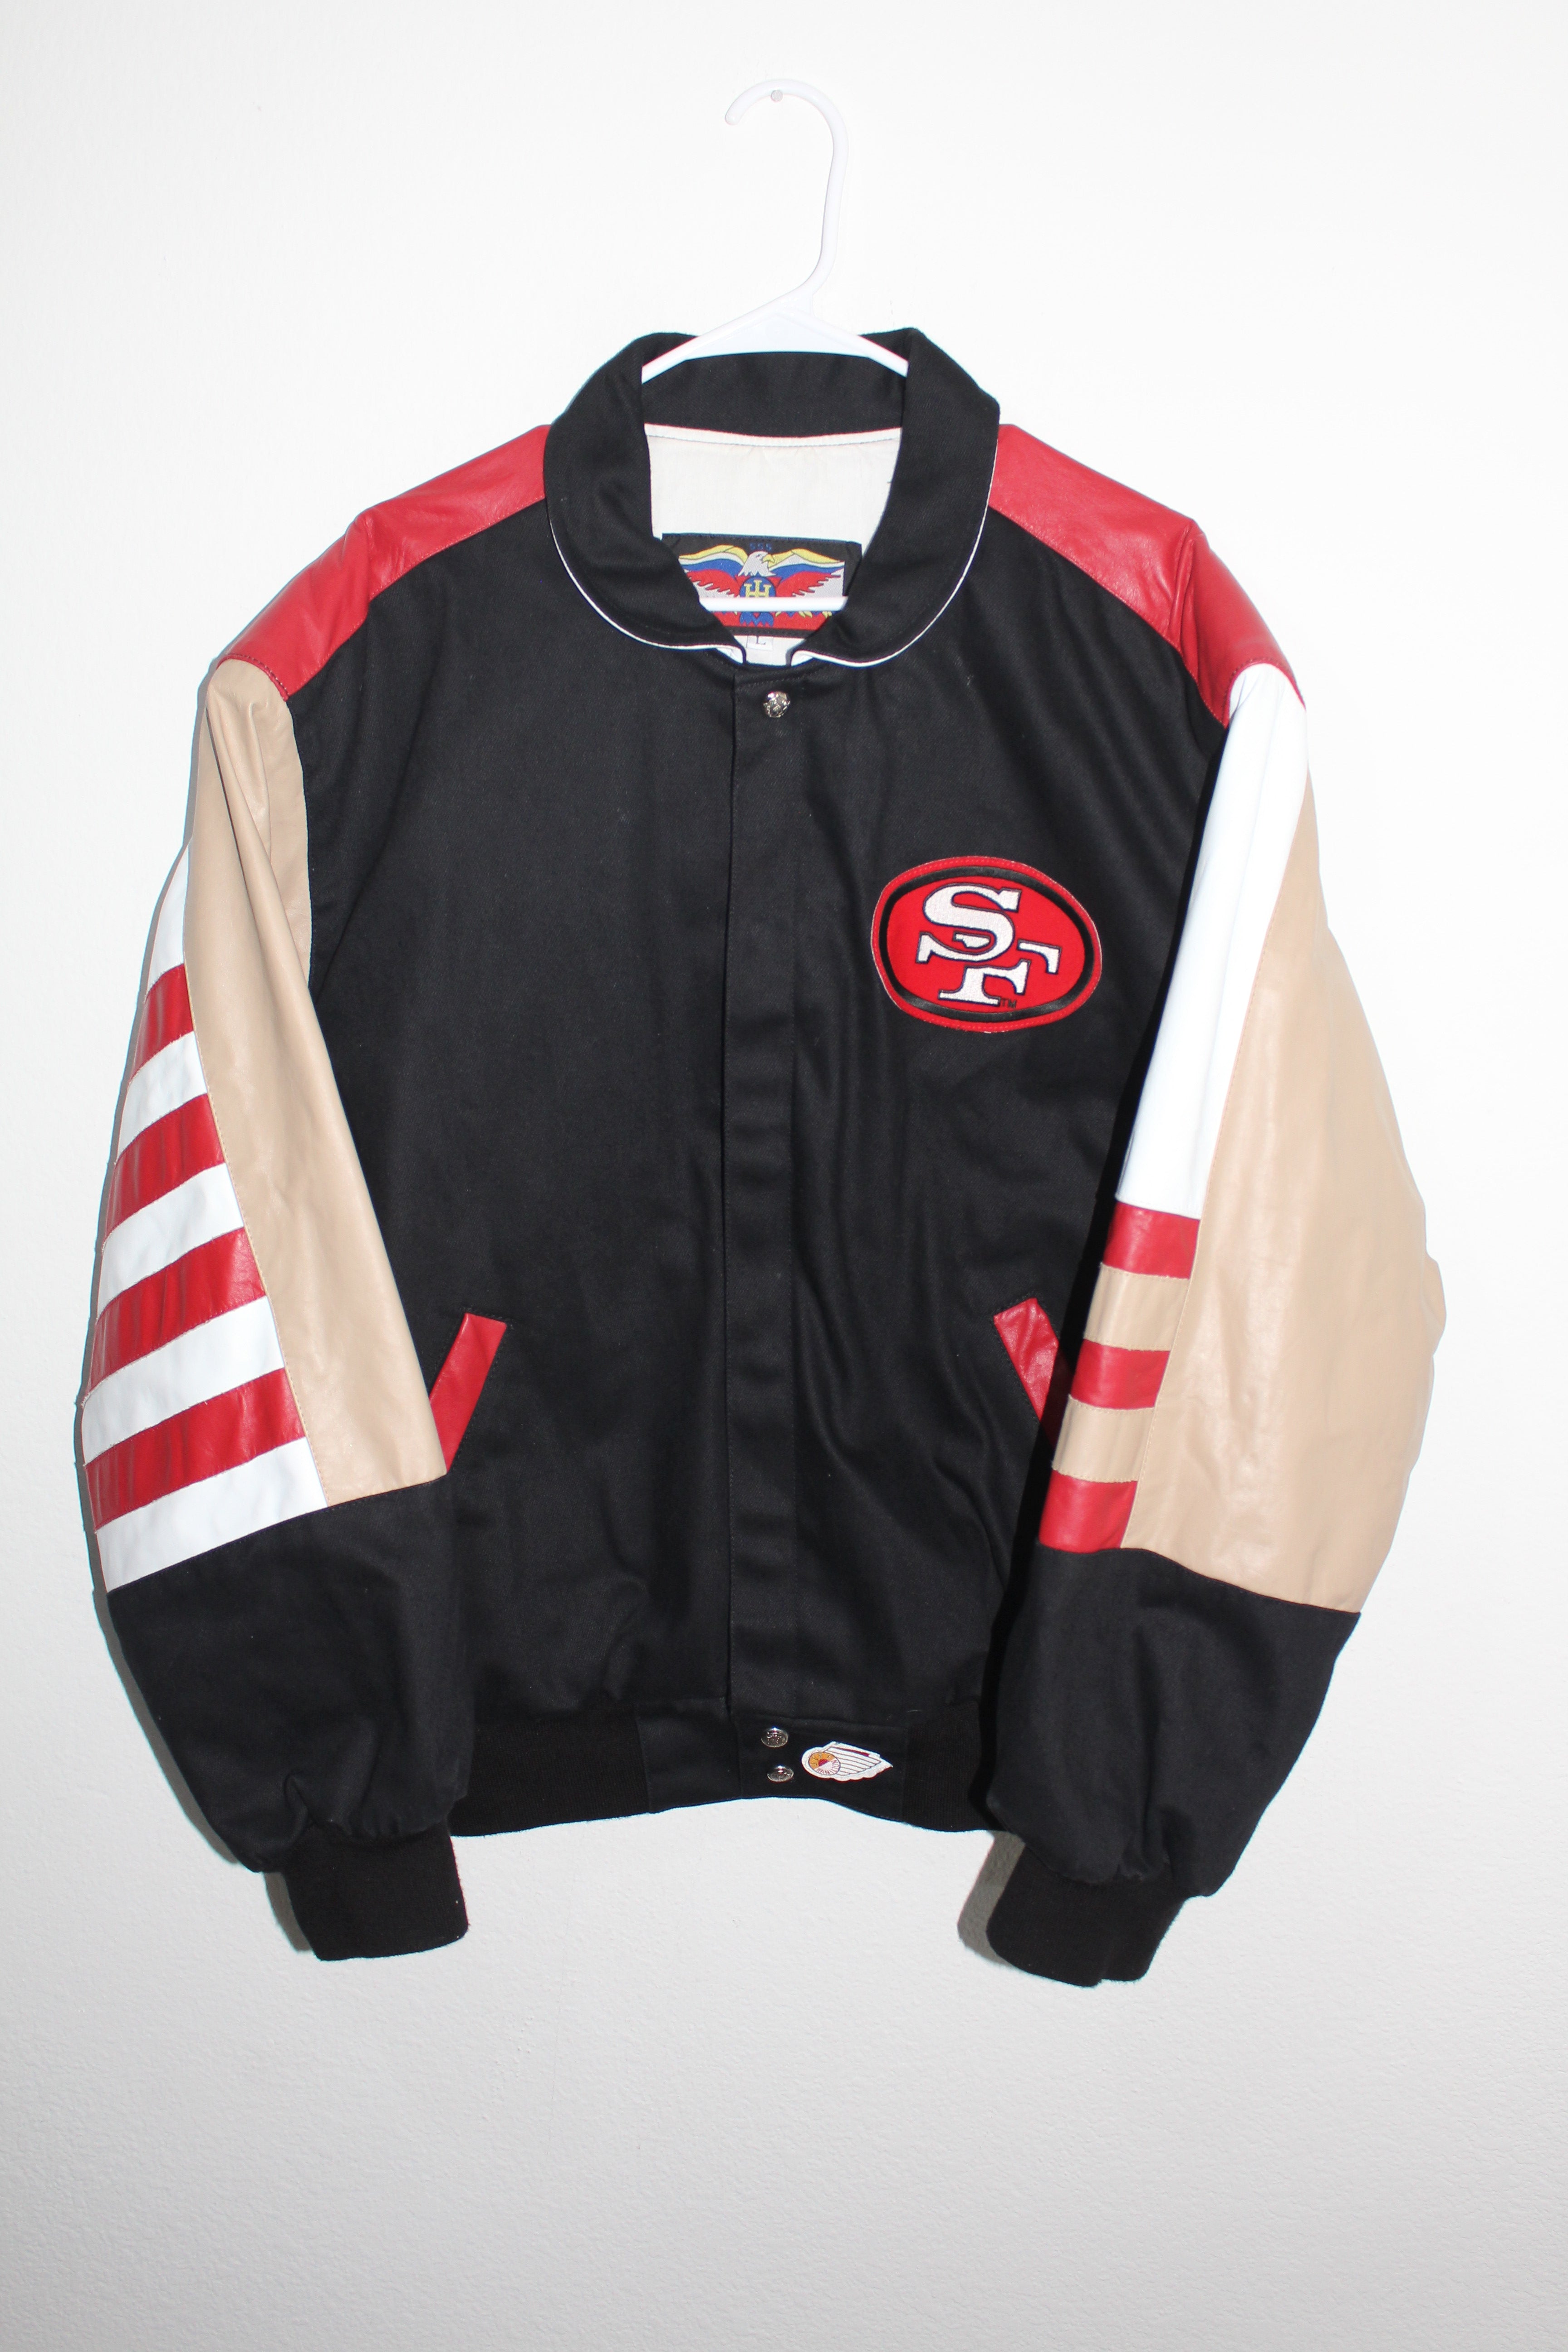 Rare Chicago White Sox Jeff Hamilton Leather Jacket (XXL) – Retro 